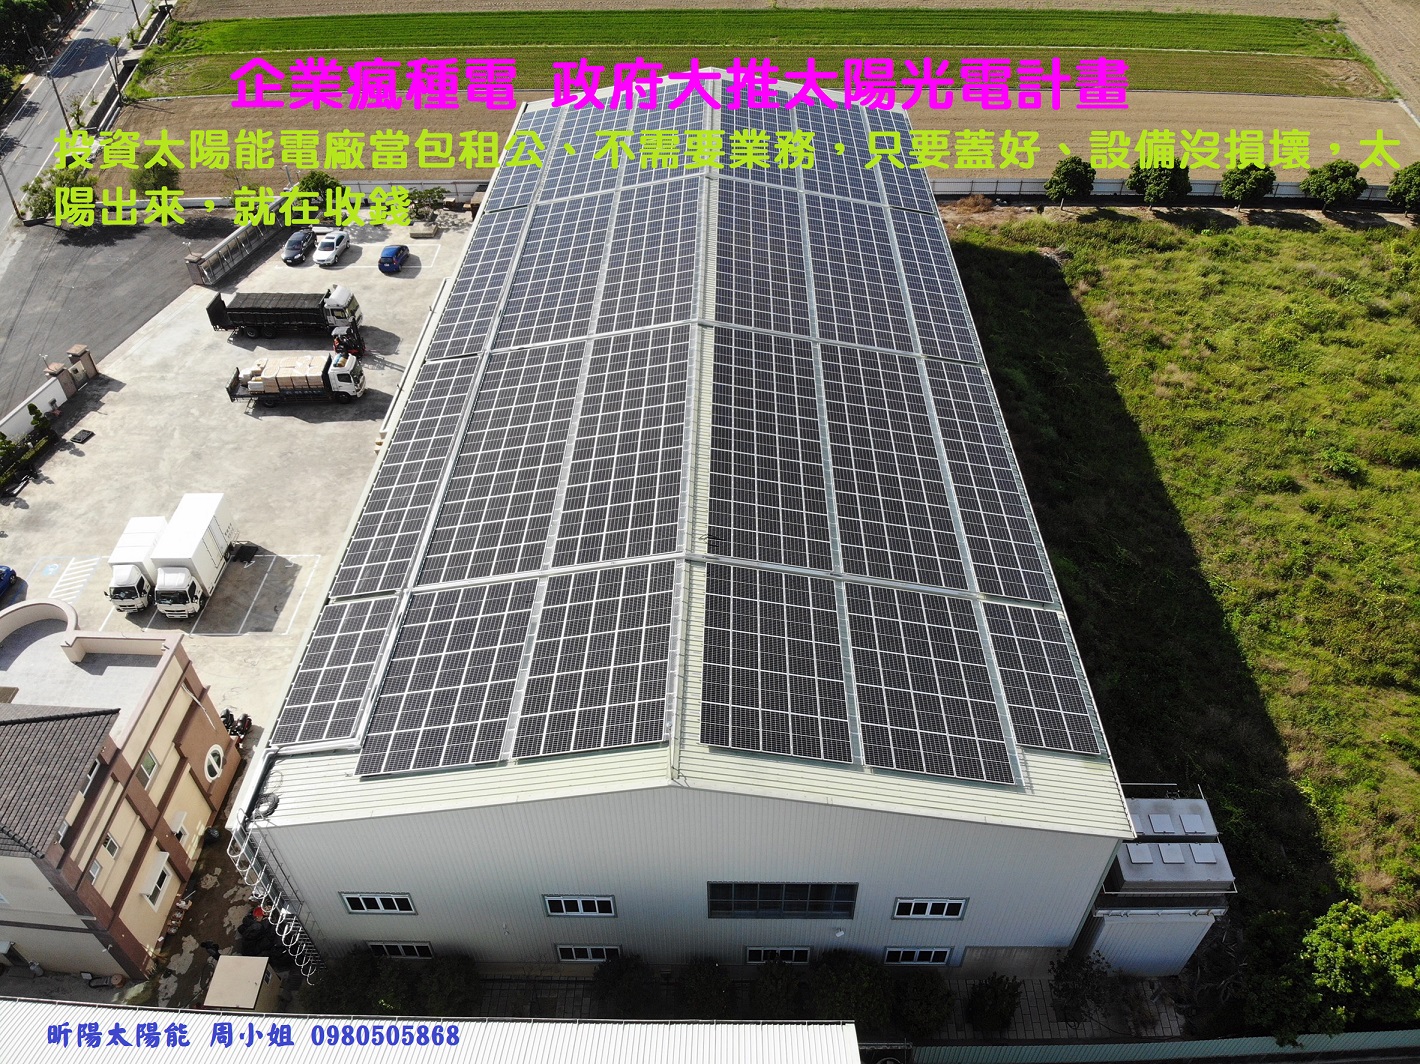 1601000514_台南太陽能 陽光工廠 綠色廠房 新市太陽能 廠房屋頂出租 工廠裝太陽能 用電大戶 綠色電力 綠能 閒置屋頂投資太陽光電.jpg